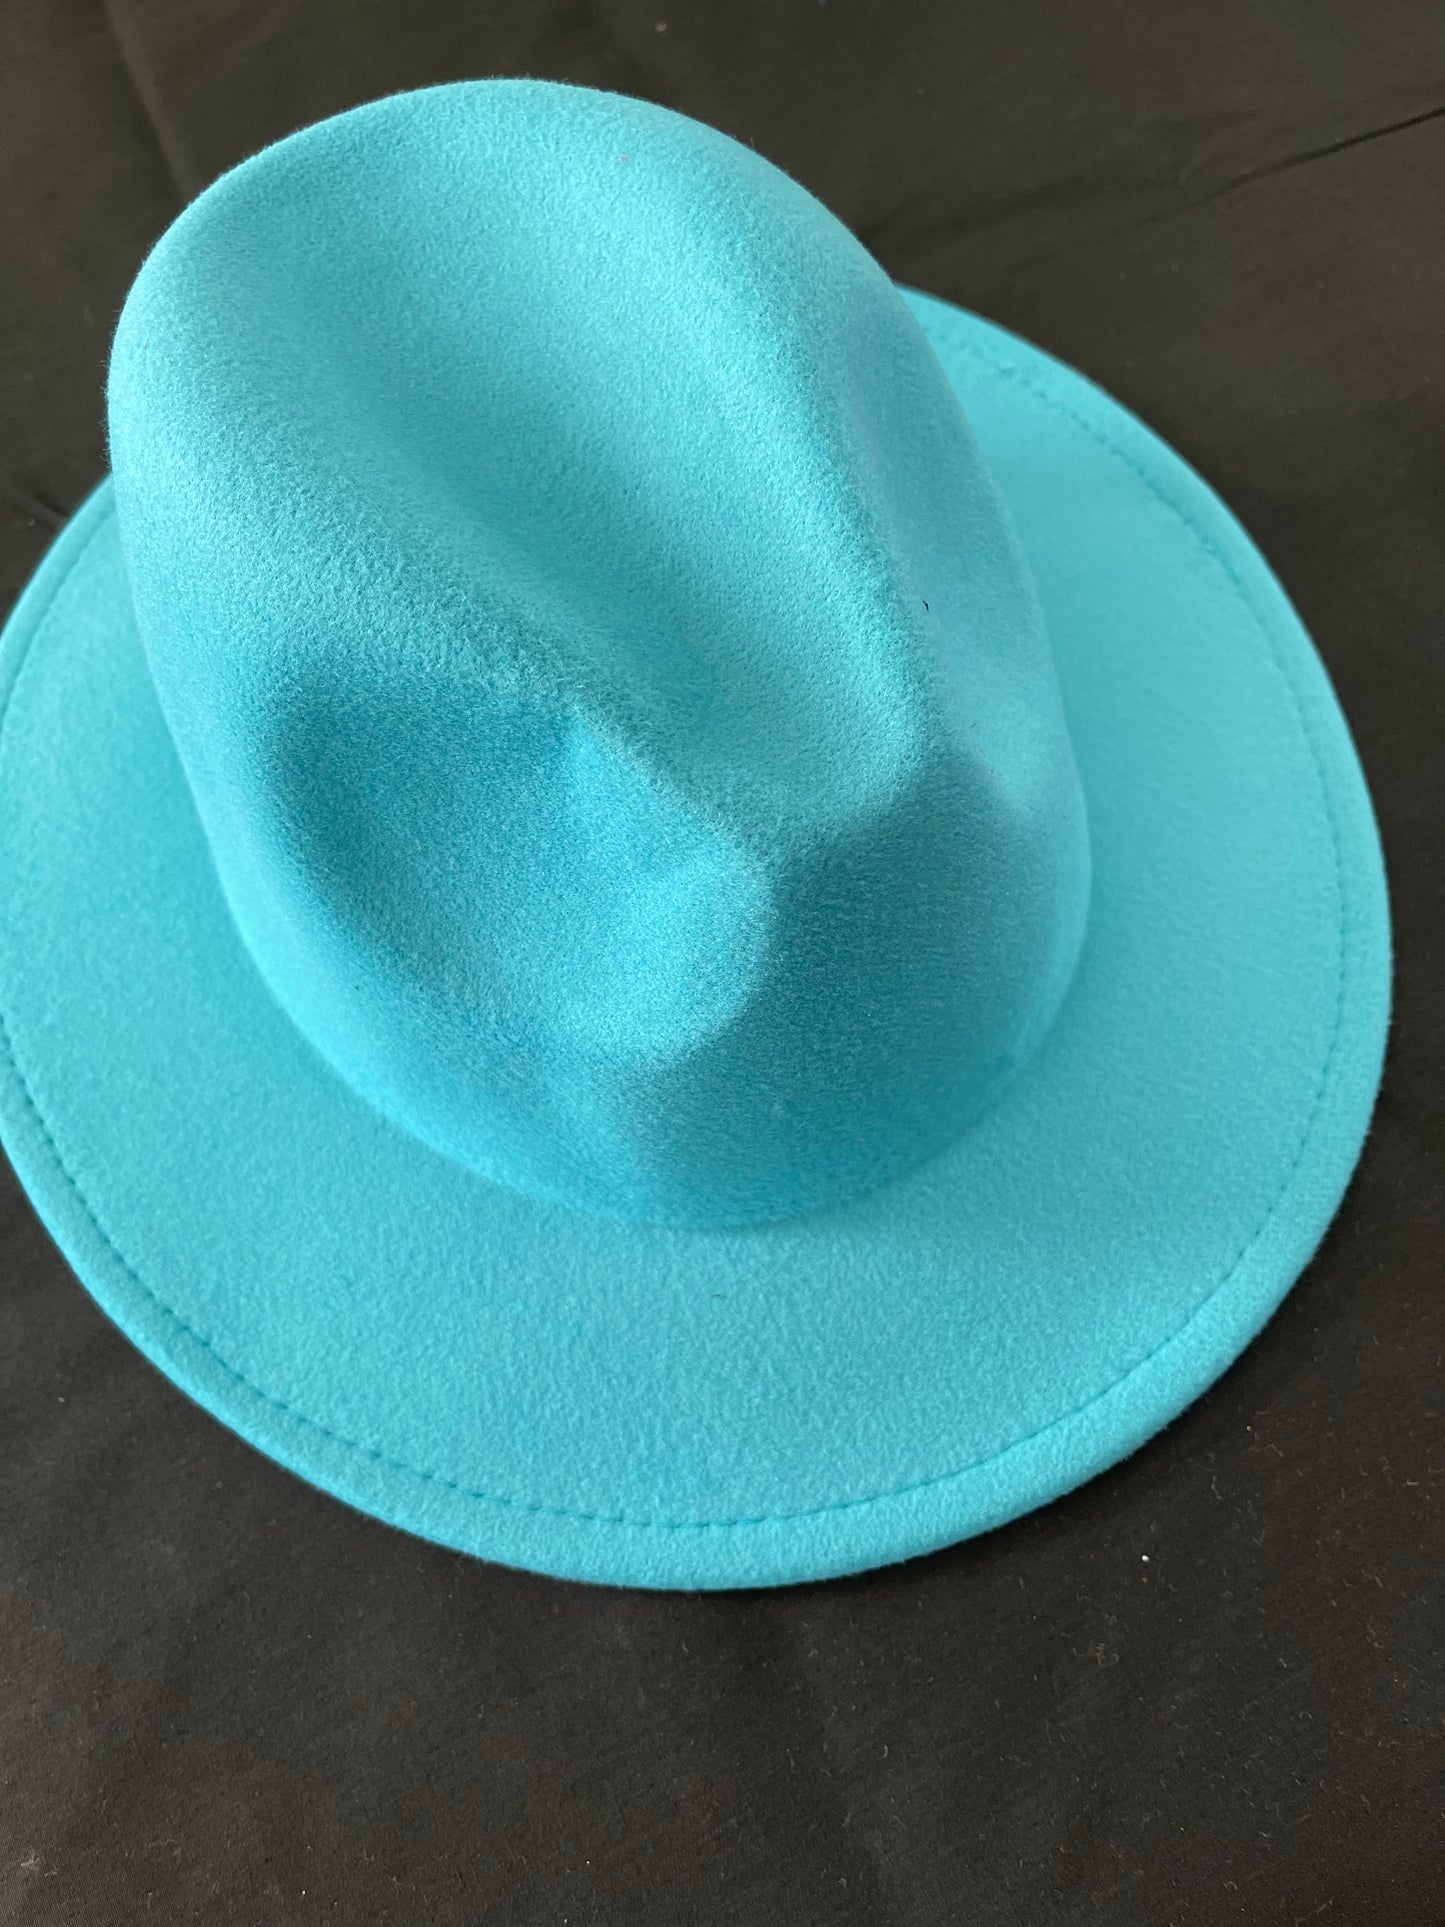 Potae - Turquoise Fedora Hat and Band